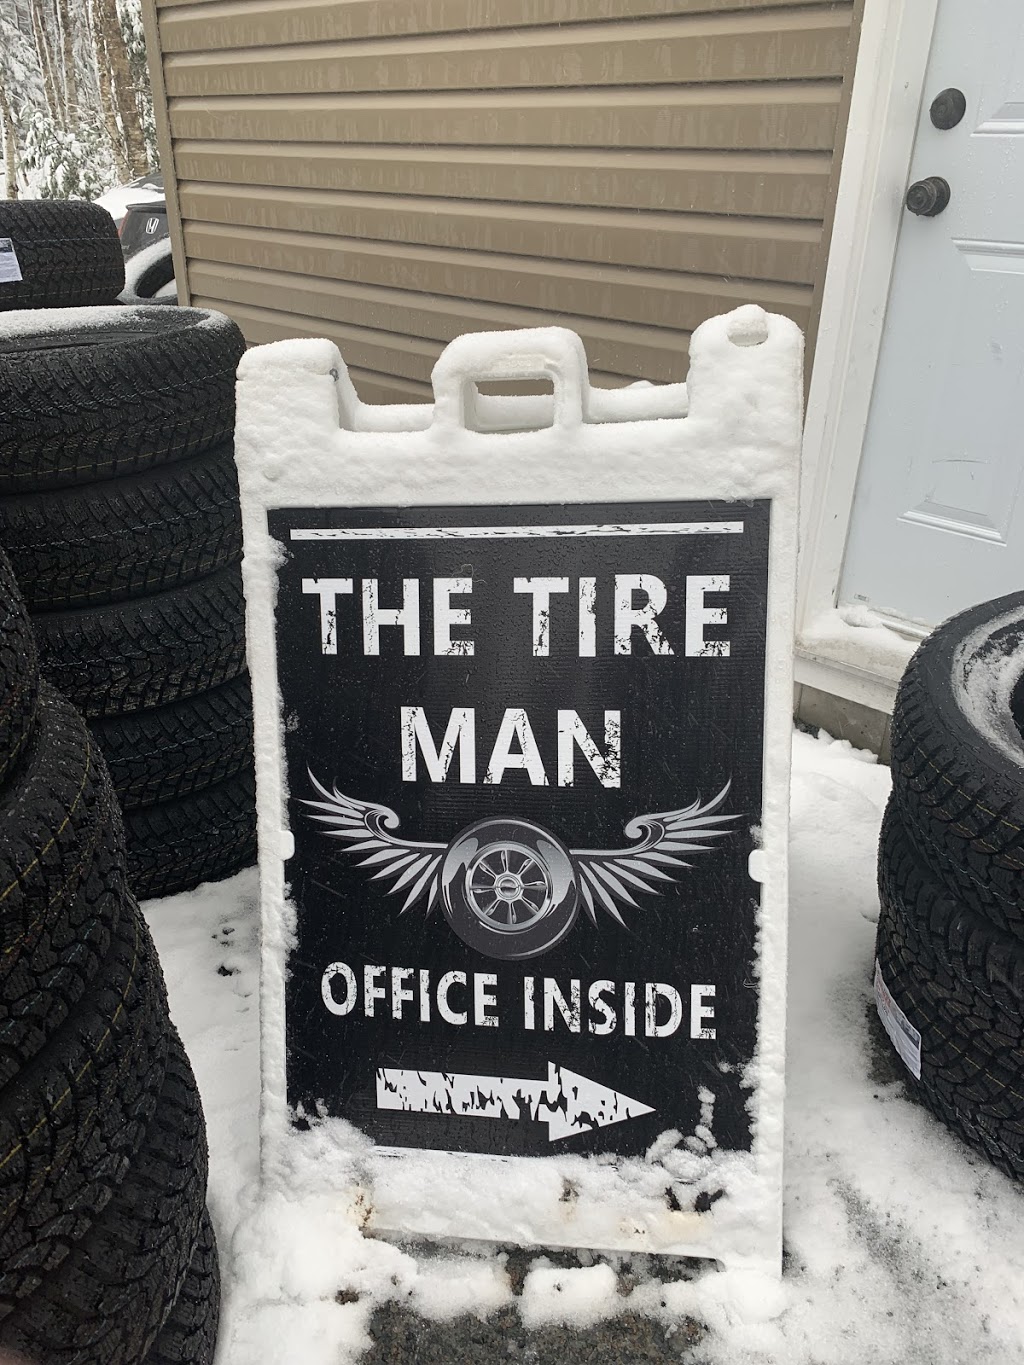 The Tire Man | car repair | 325 Patton Rd, Upper Sackville, NS B4E 3C2, Canada | 9029328473 OR +1 902-932-8473